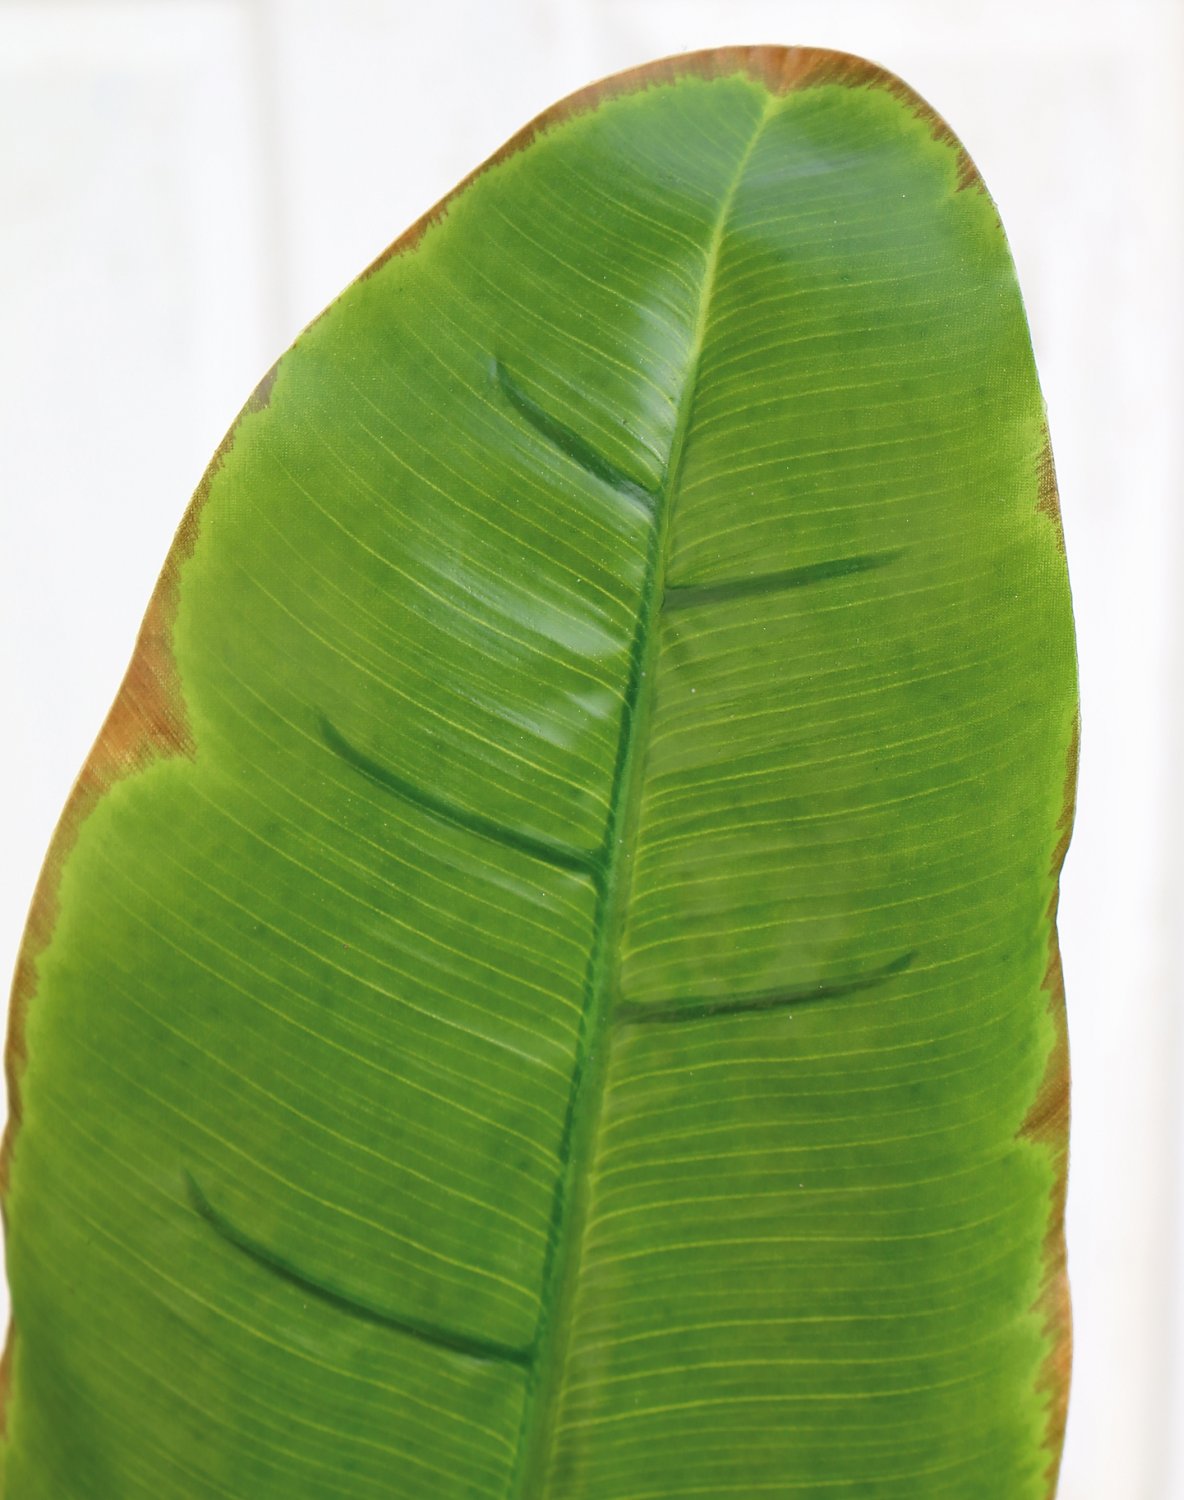 Foglia di banano artificiale, 96 cm (foglia 38 cm), verde